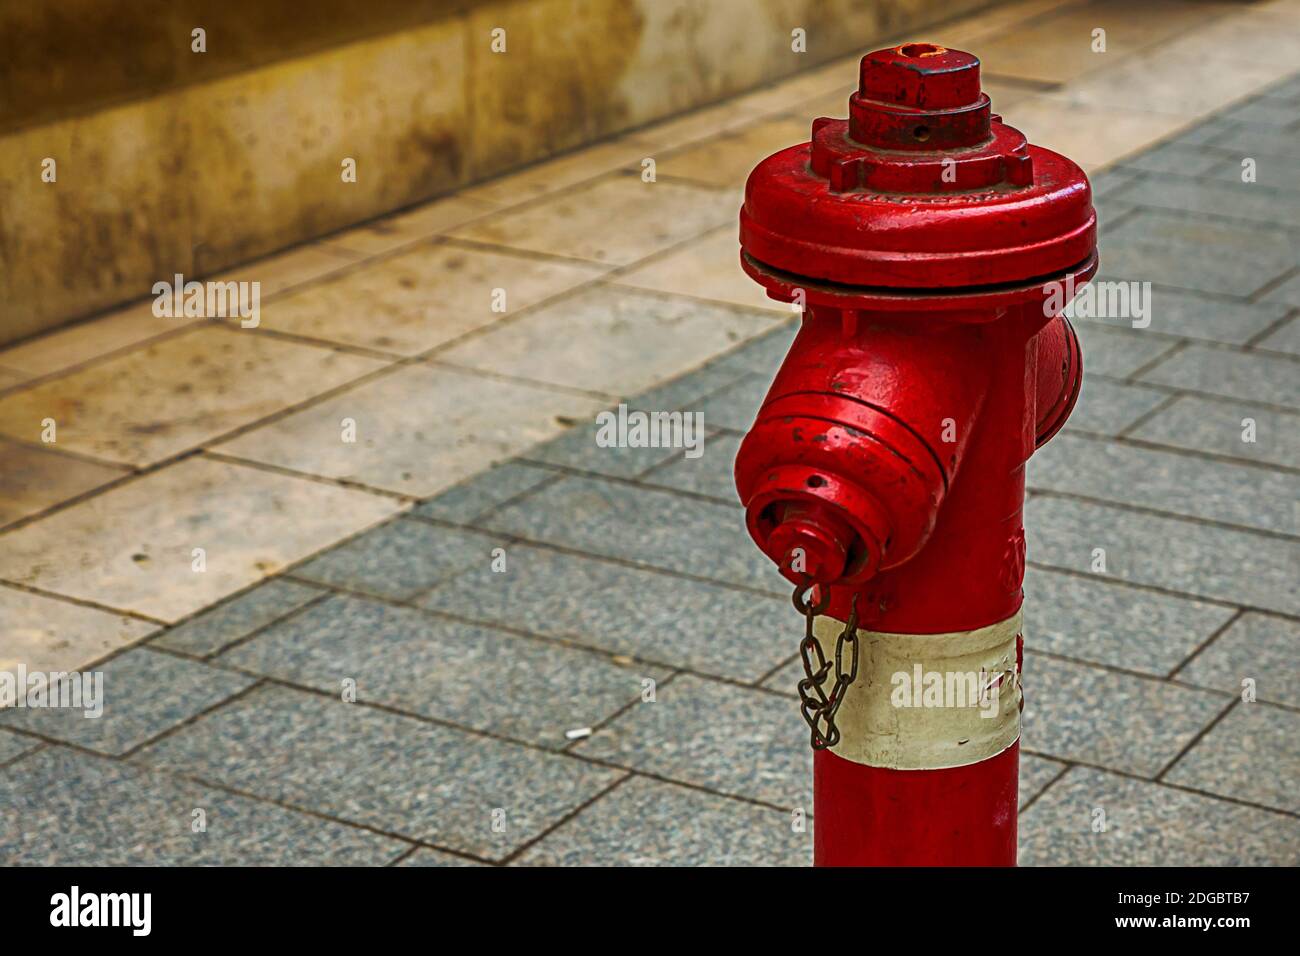 Hidrante de fuego rojo blanco protección de la ciudad en un fondo de azulejos grises diseño urbano Foto de stock